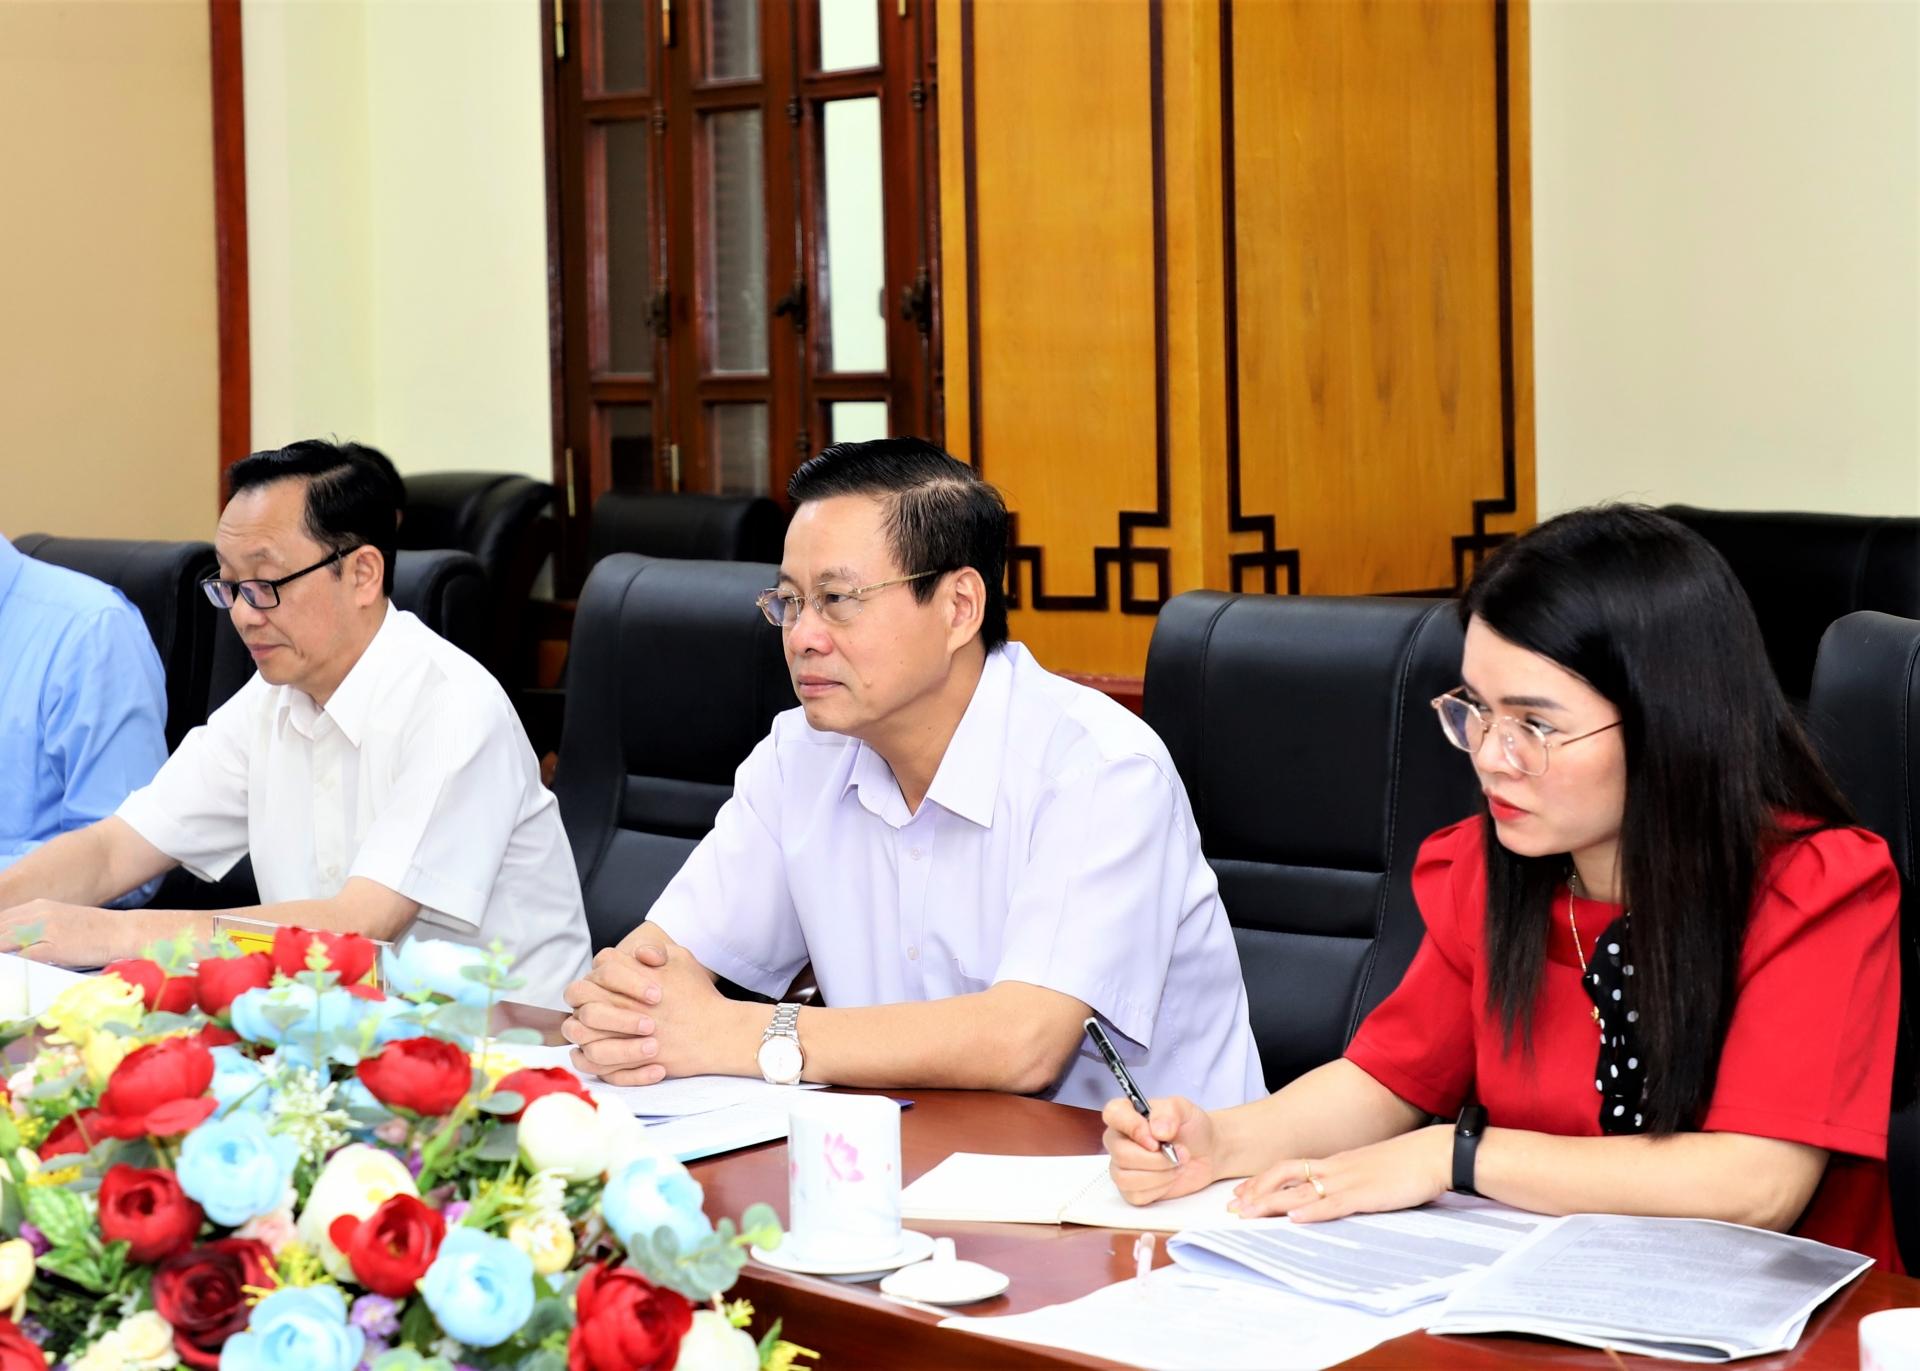 Chủ tịch UBND tỉnh Nguyễn Văn Sơn trao đổi tại buổi làm việc.